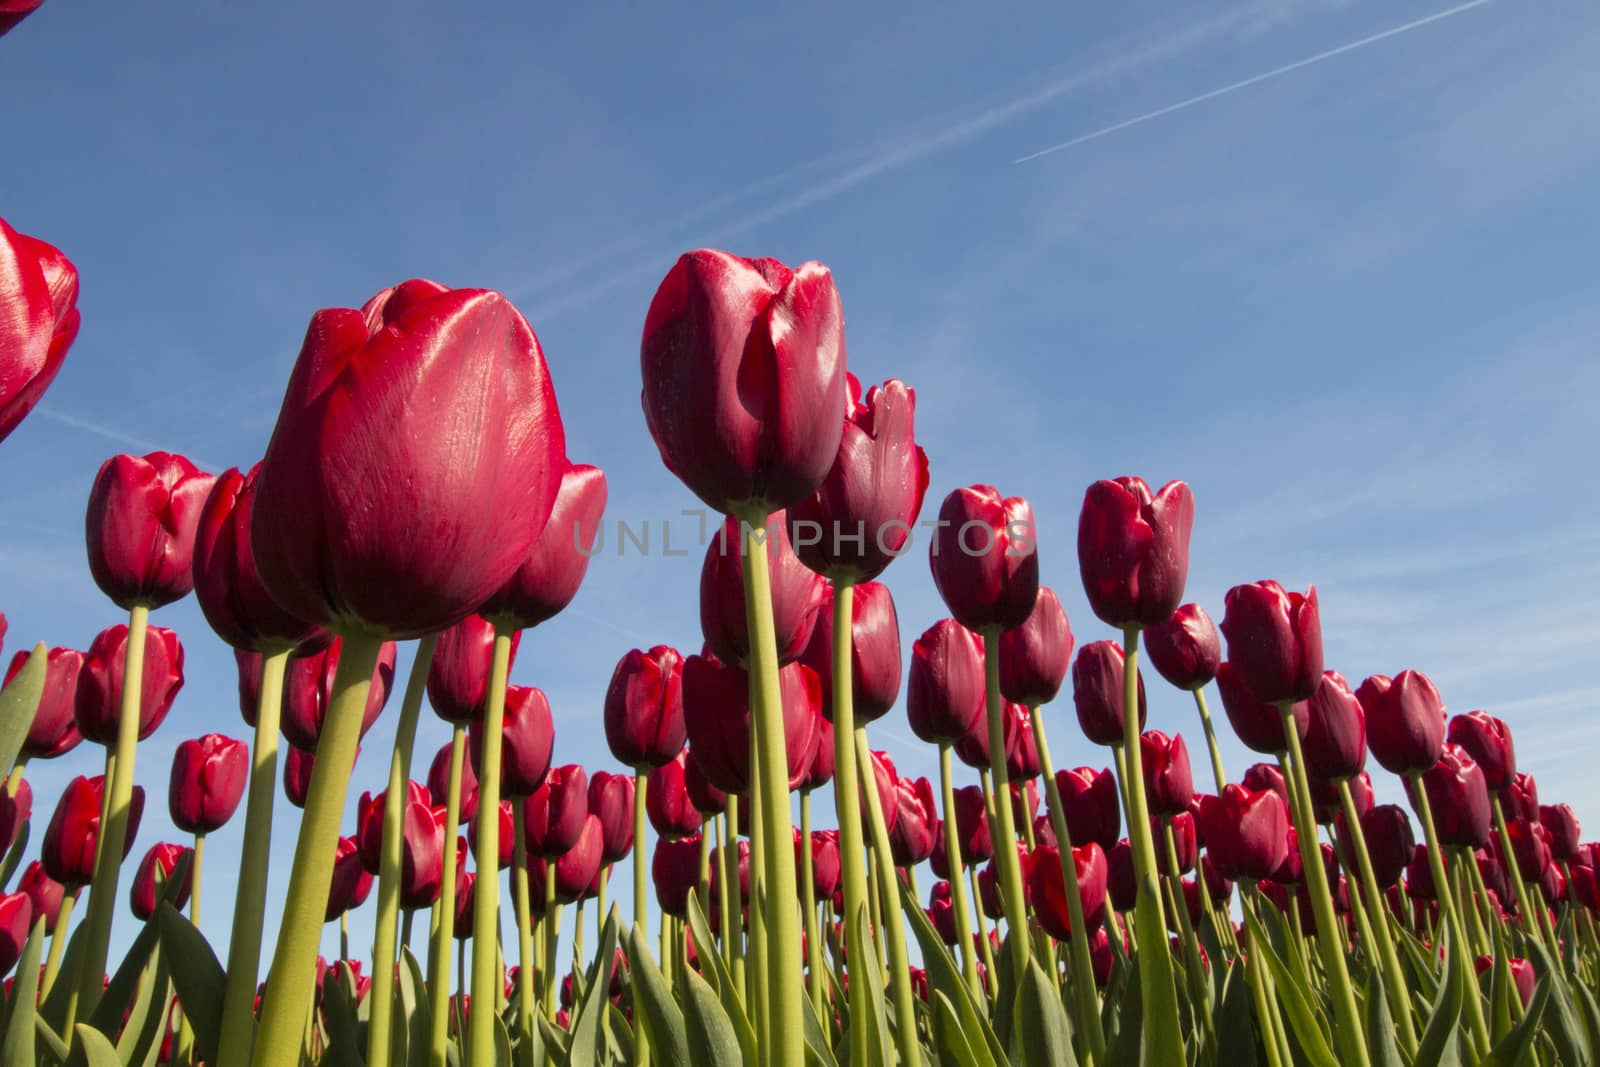 Red tulips against blue sky by avanheertum